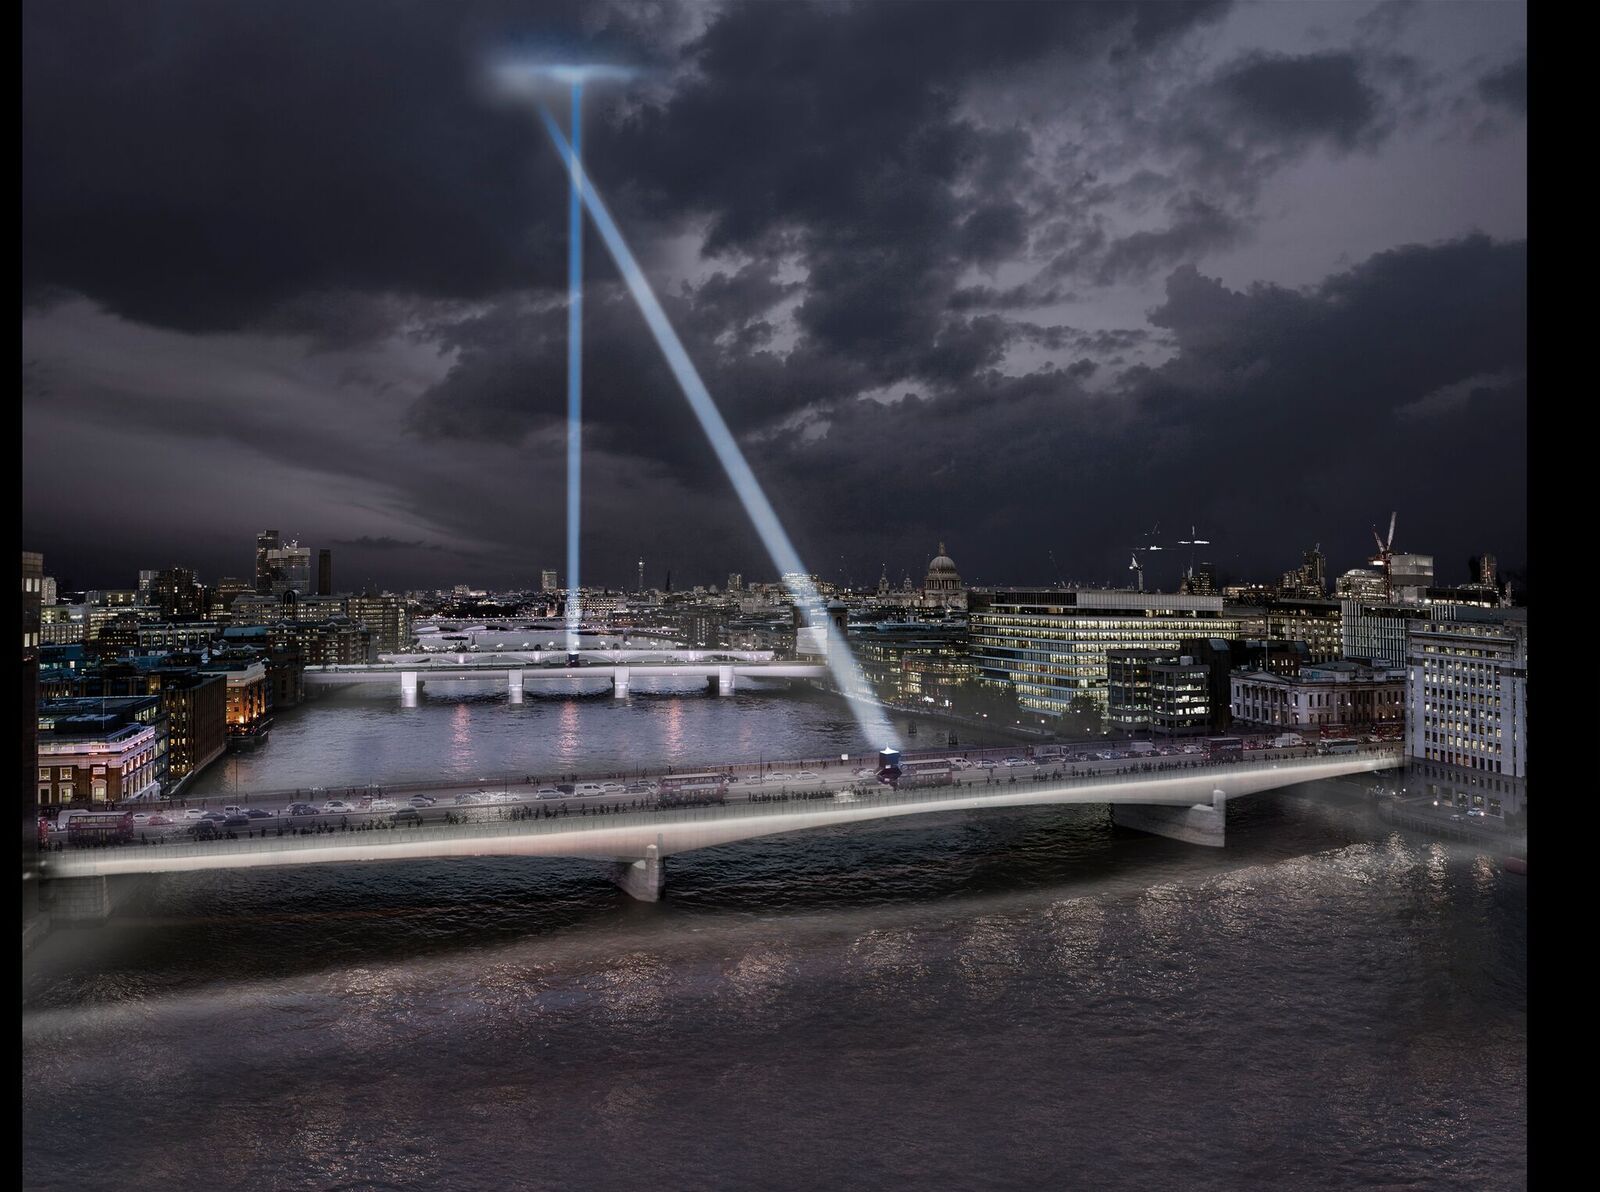 Evènement spécial avec le relais de la torche - London Bridge, London, UK © MRC and Diller Scofidio + Renfro